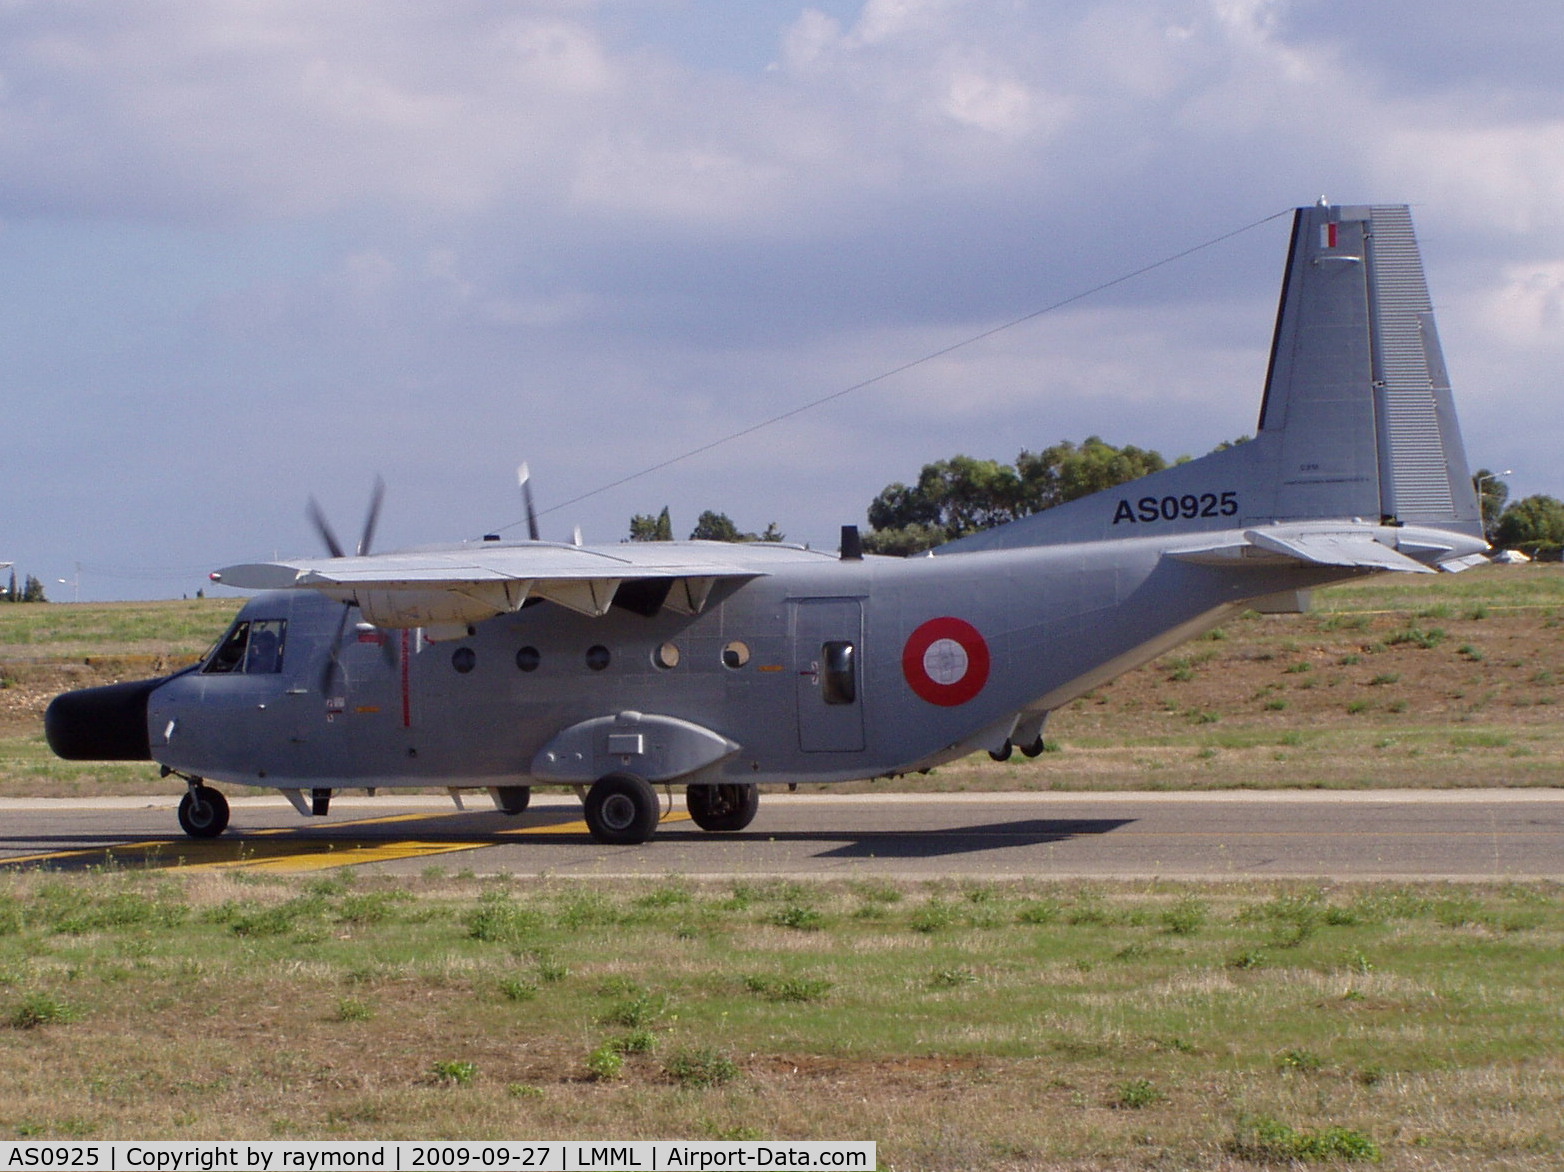 AS0925, 1978 CASA SH89 Aviocar (C-212-200) C/N CC10-P2-1-139, Casa212 AS0925 Armed Forces of Malta